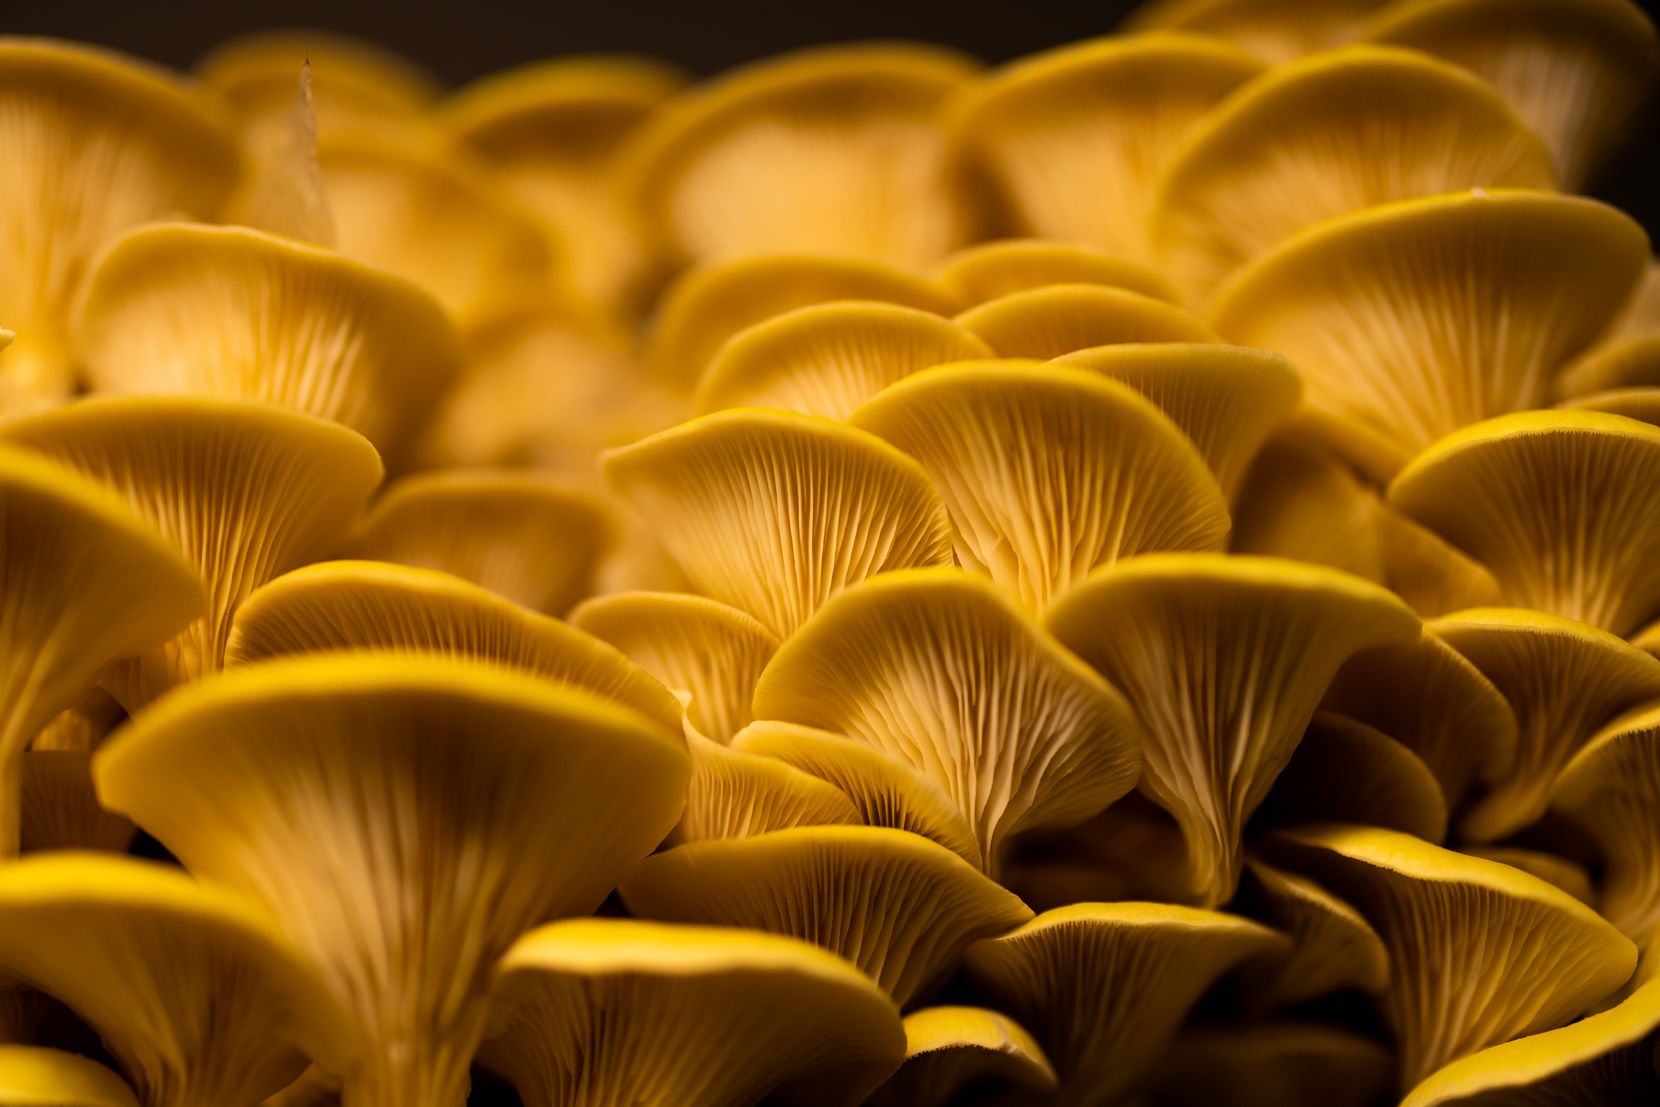 Ein schönes Bild von gelben Pilzen.